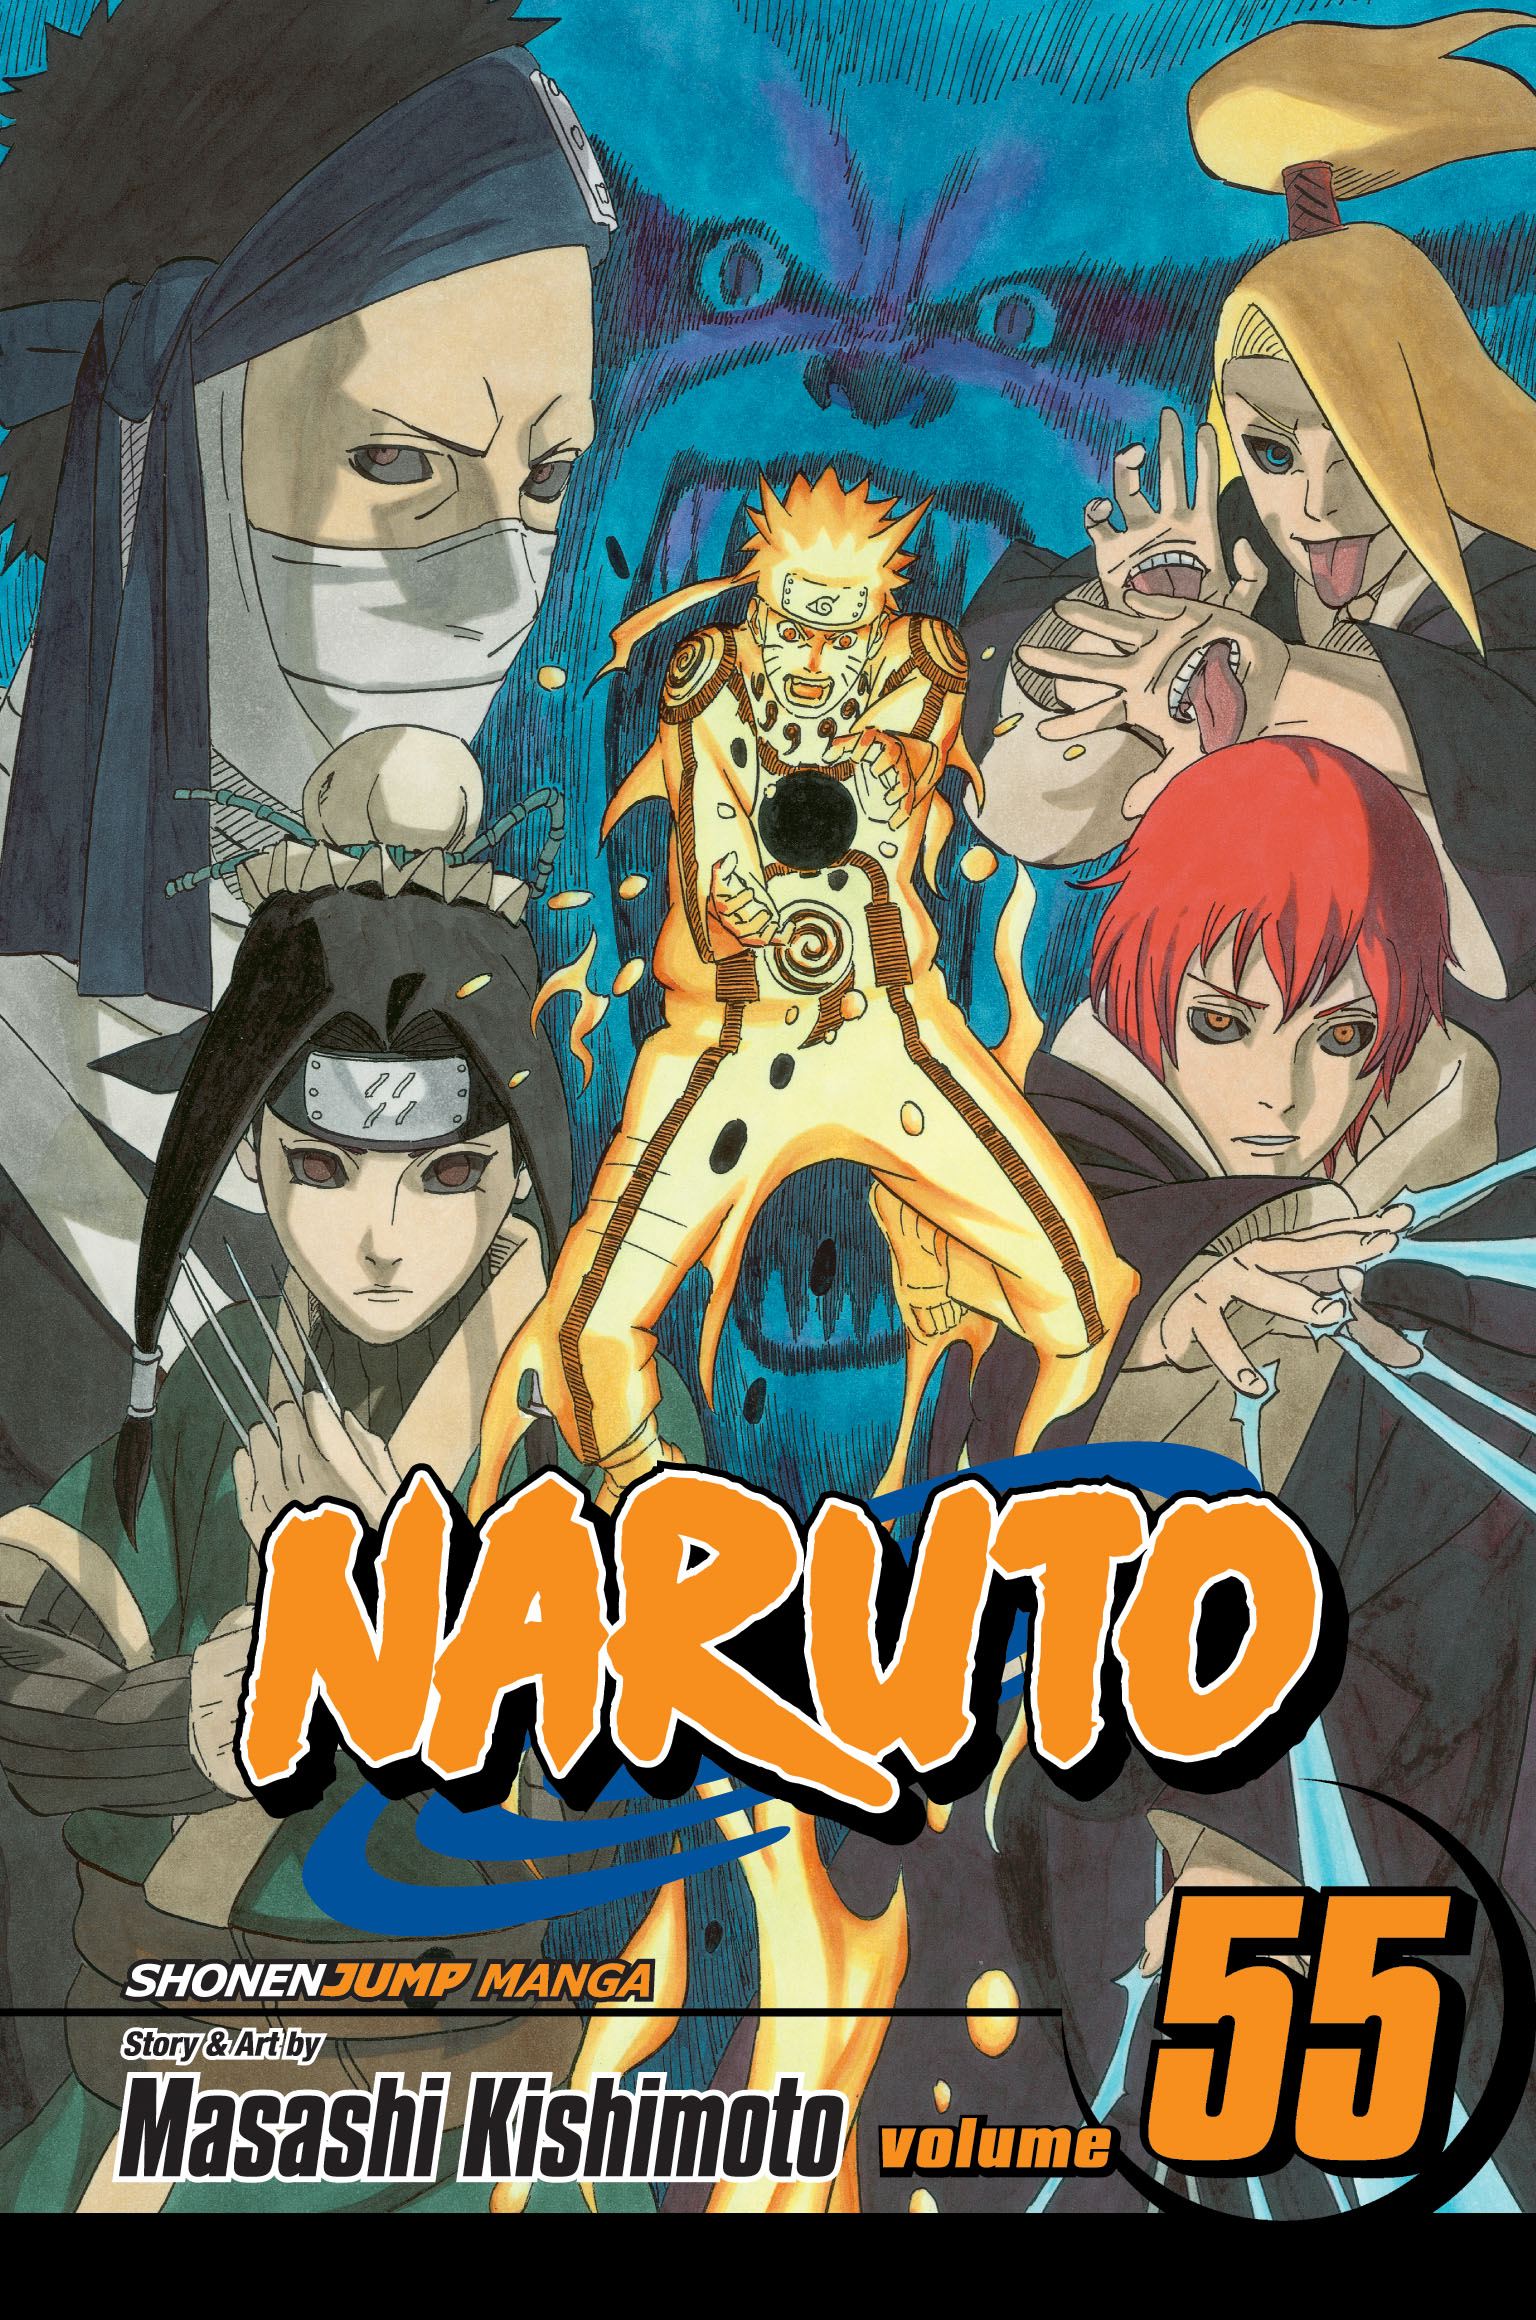 Naruto Vol. 55 | Kishimoto, Masashi